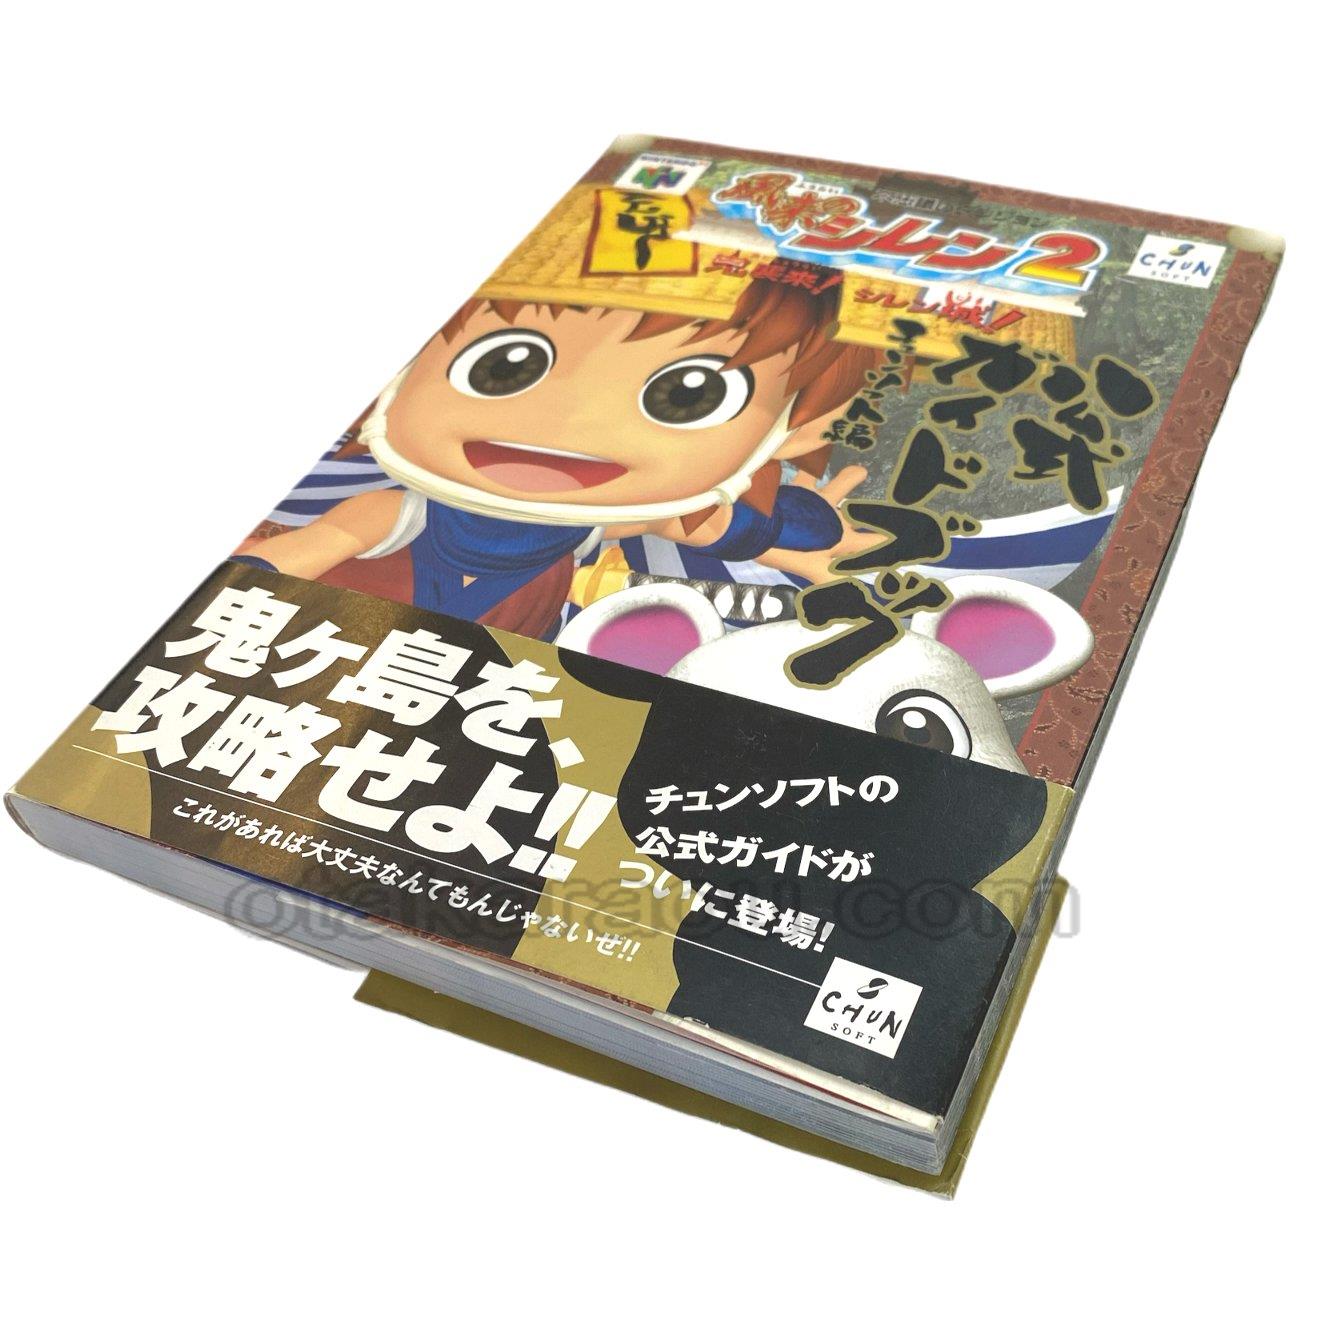 ニンテンドウ64 不思議のダンジョン 風来のシレン2 任天堂公式ガイドブック ファミコンショップお宝王